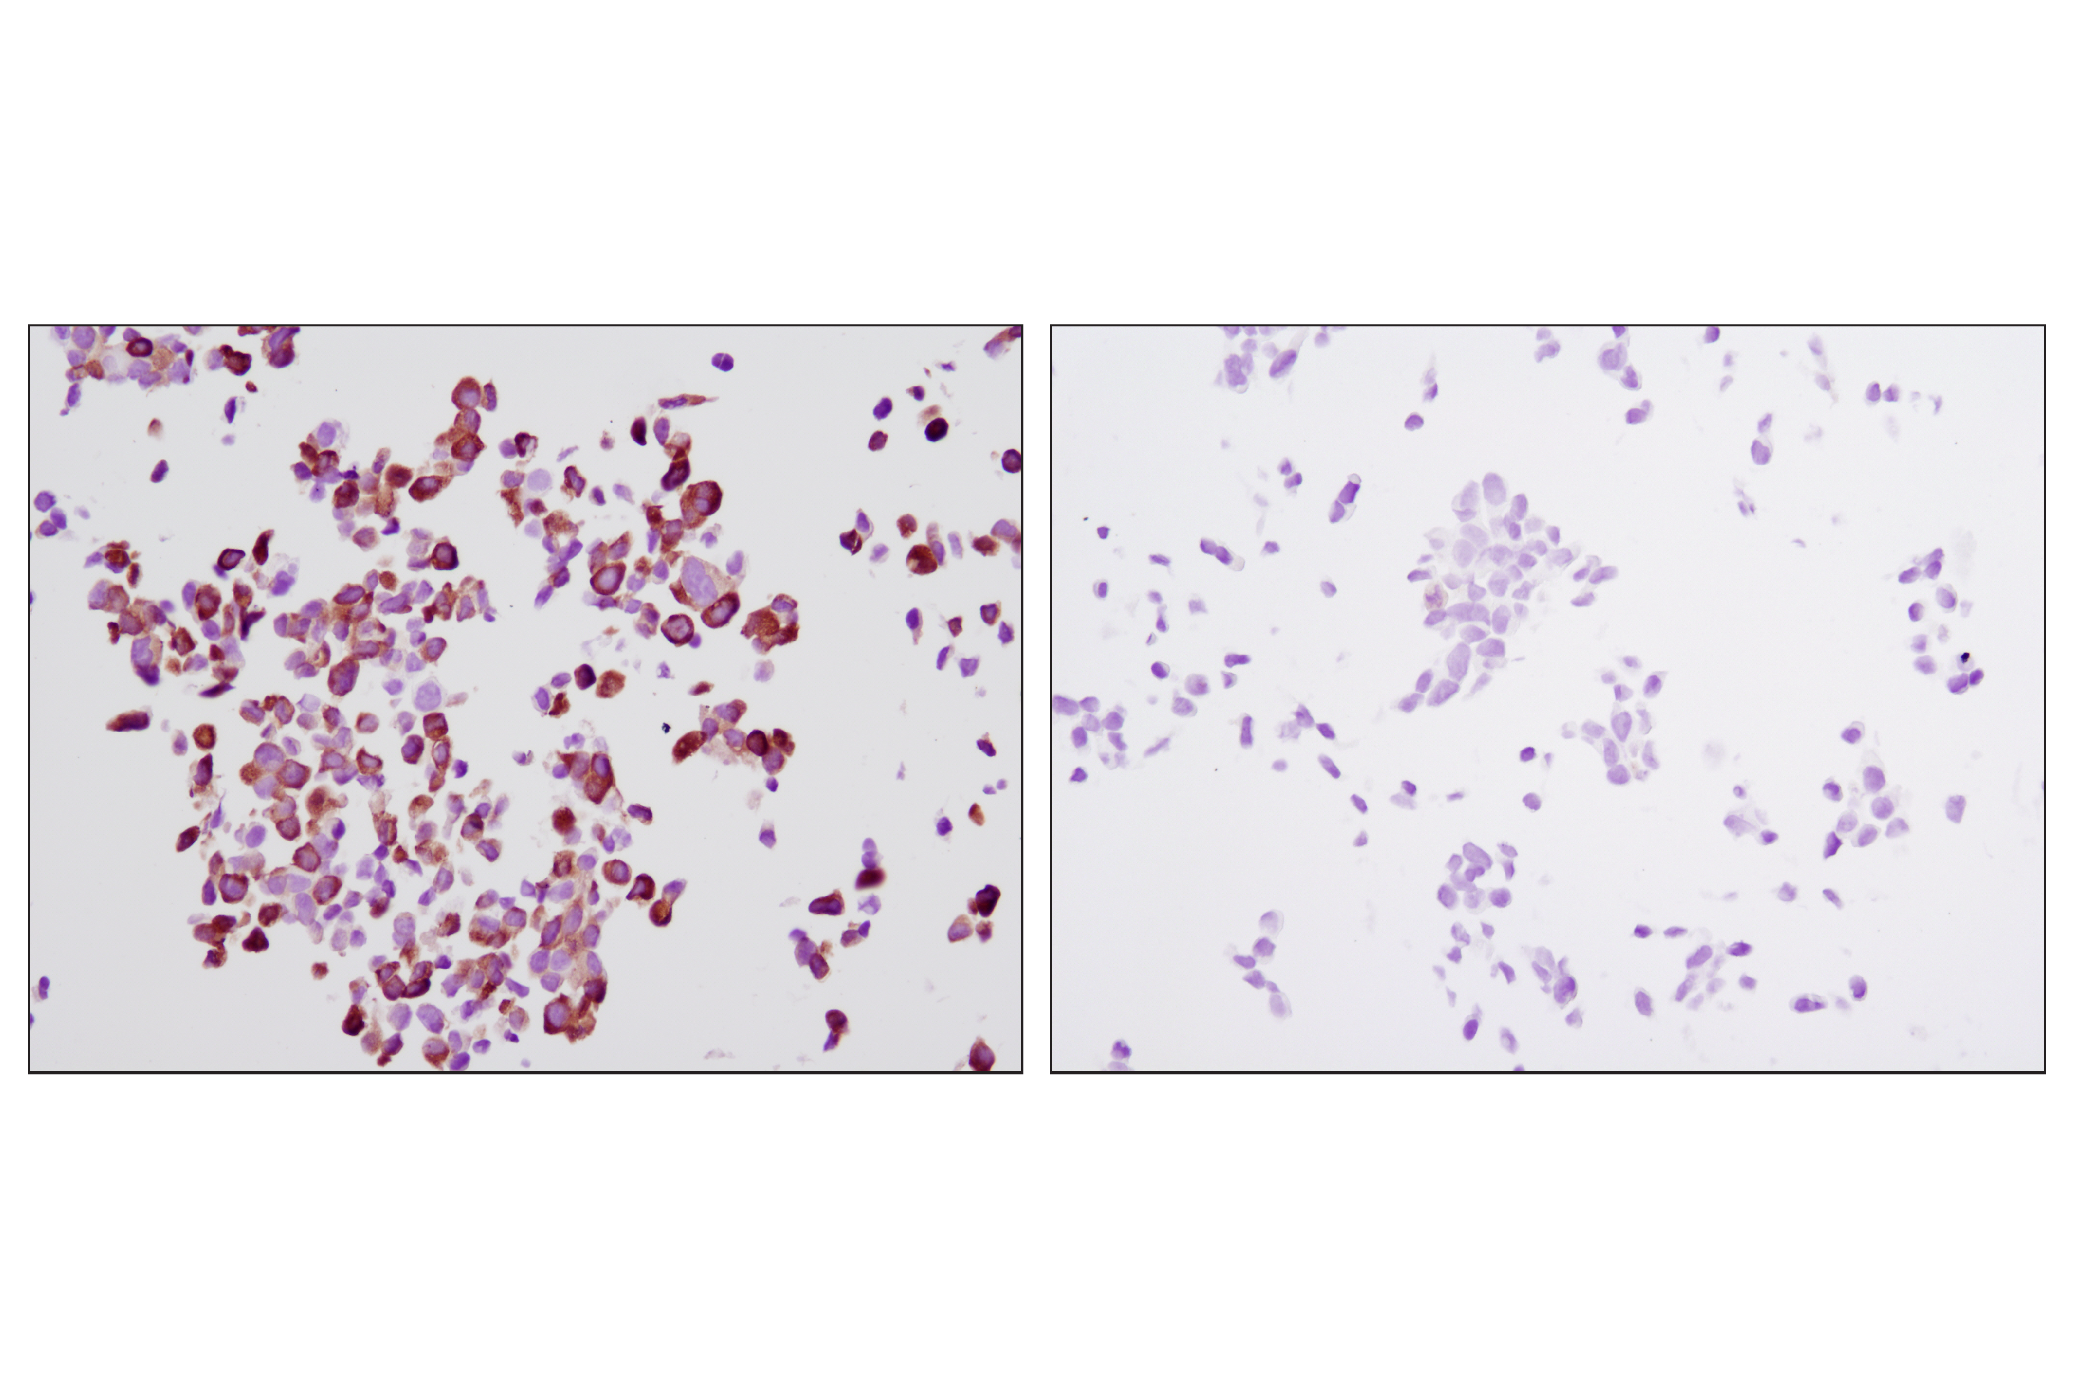  Image 28: p70 S6 Kinase Substrates Antibody Sampler Kit